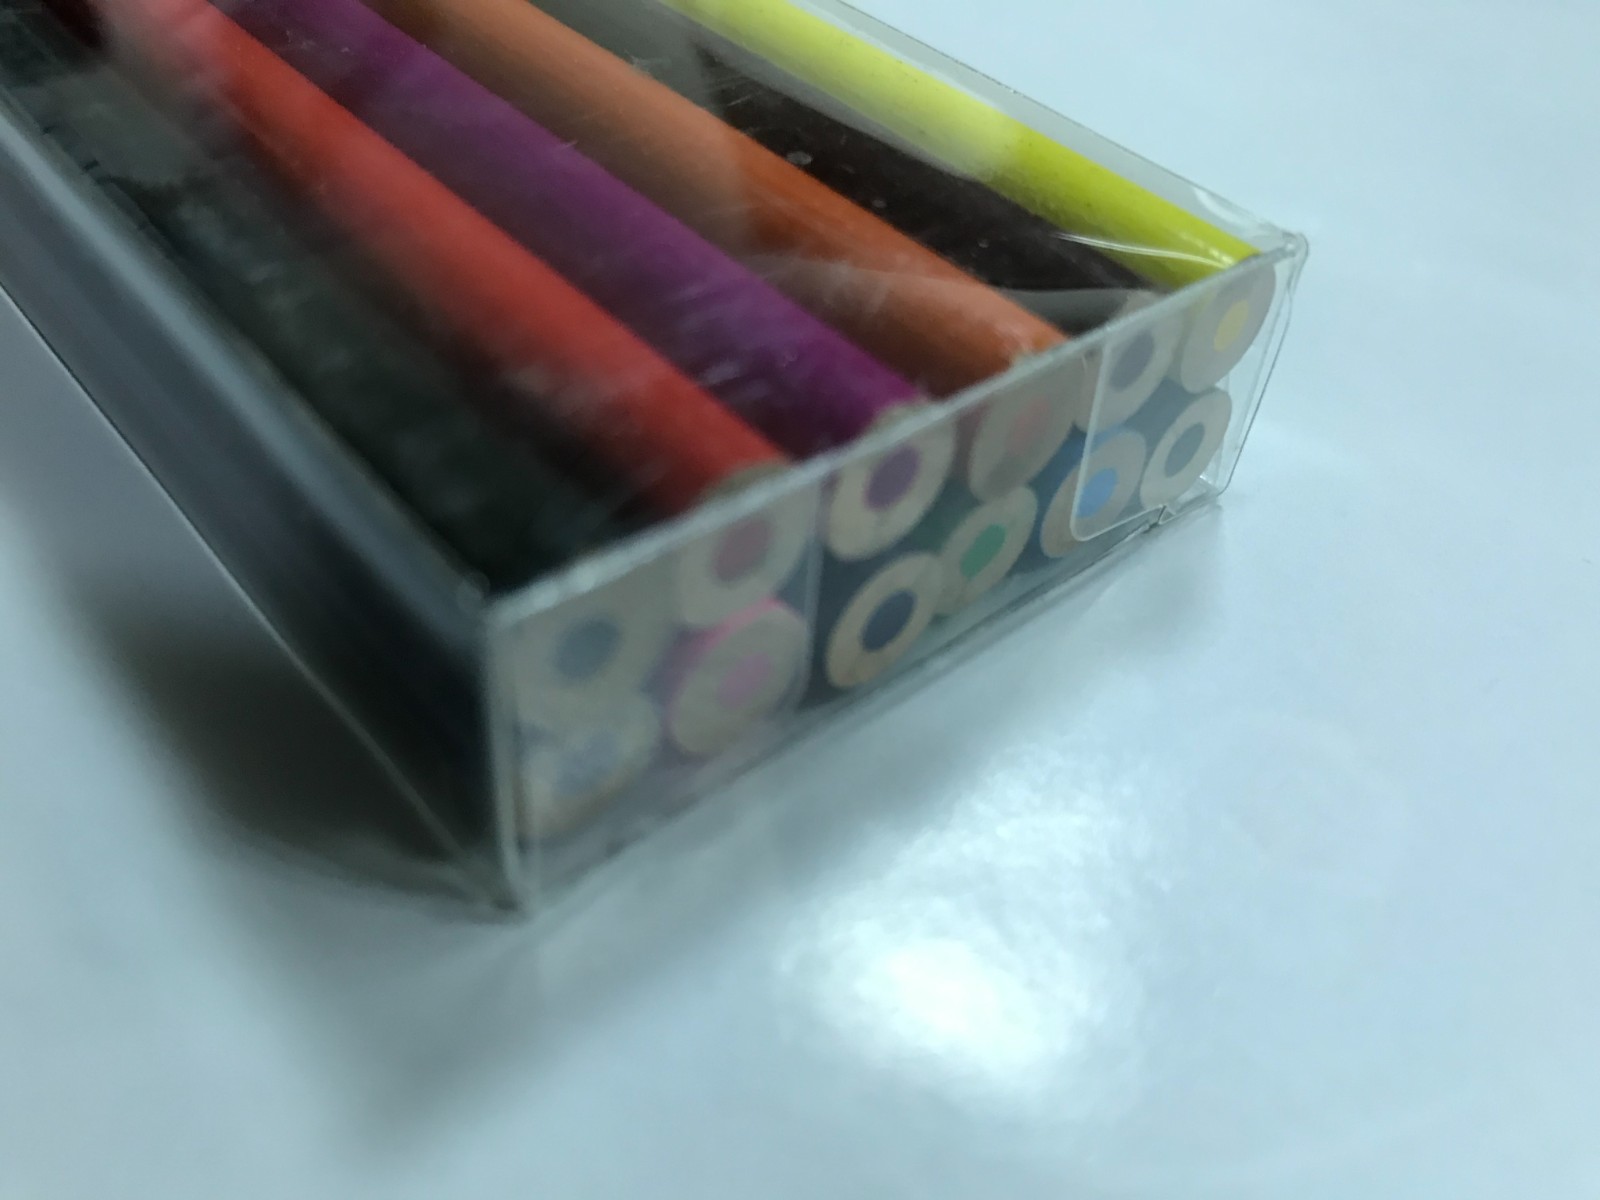 彩色鉛筆12色 附迷你型削鉛筆機